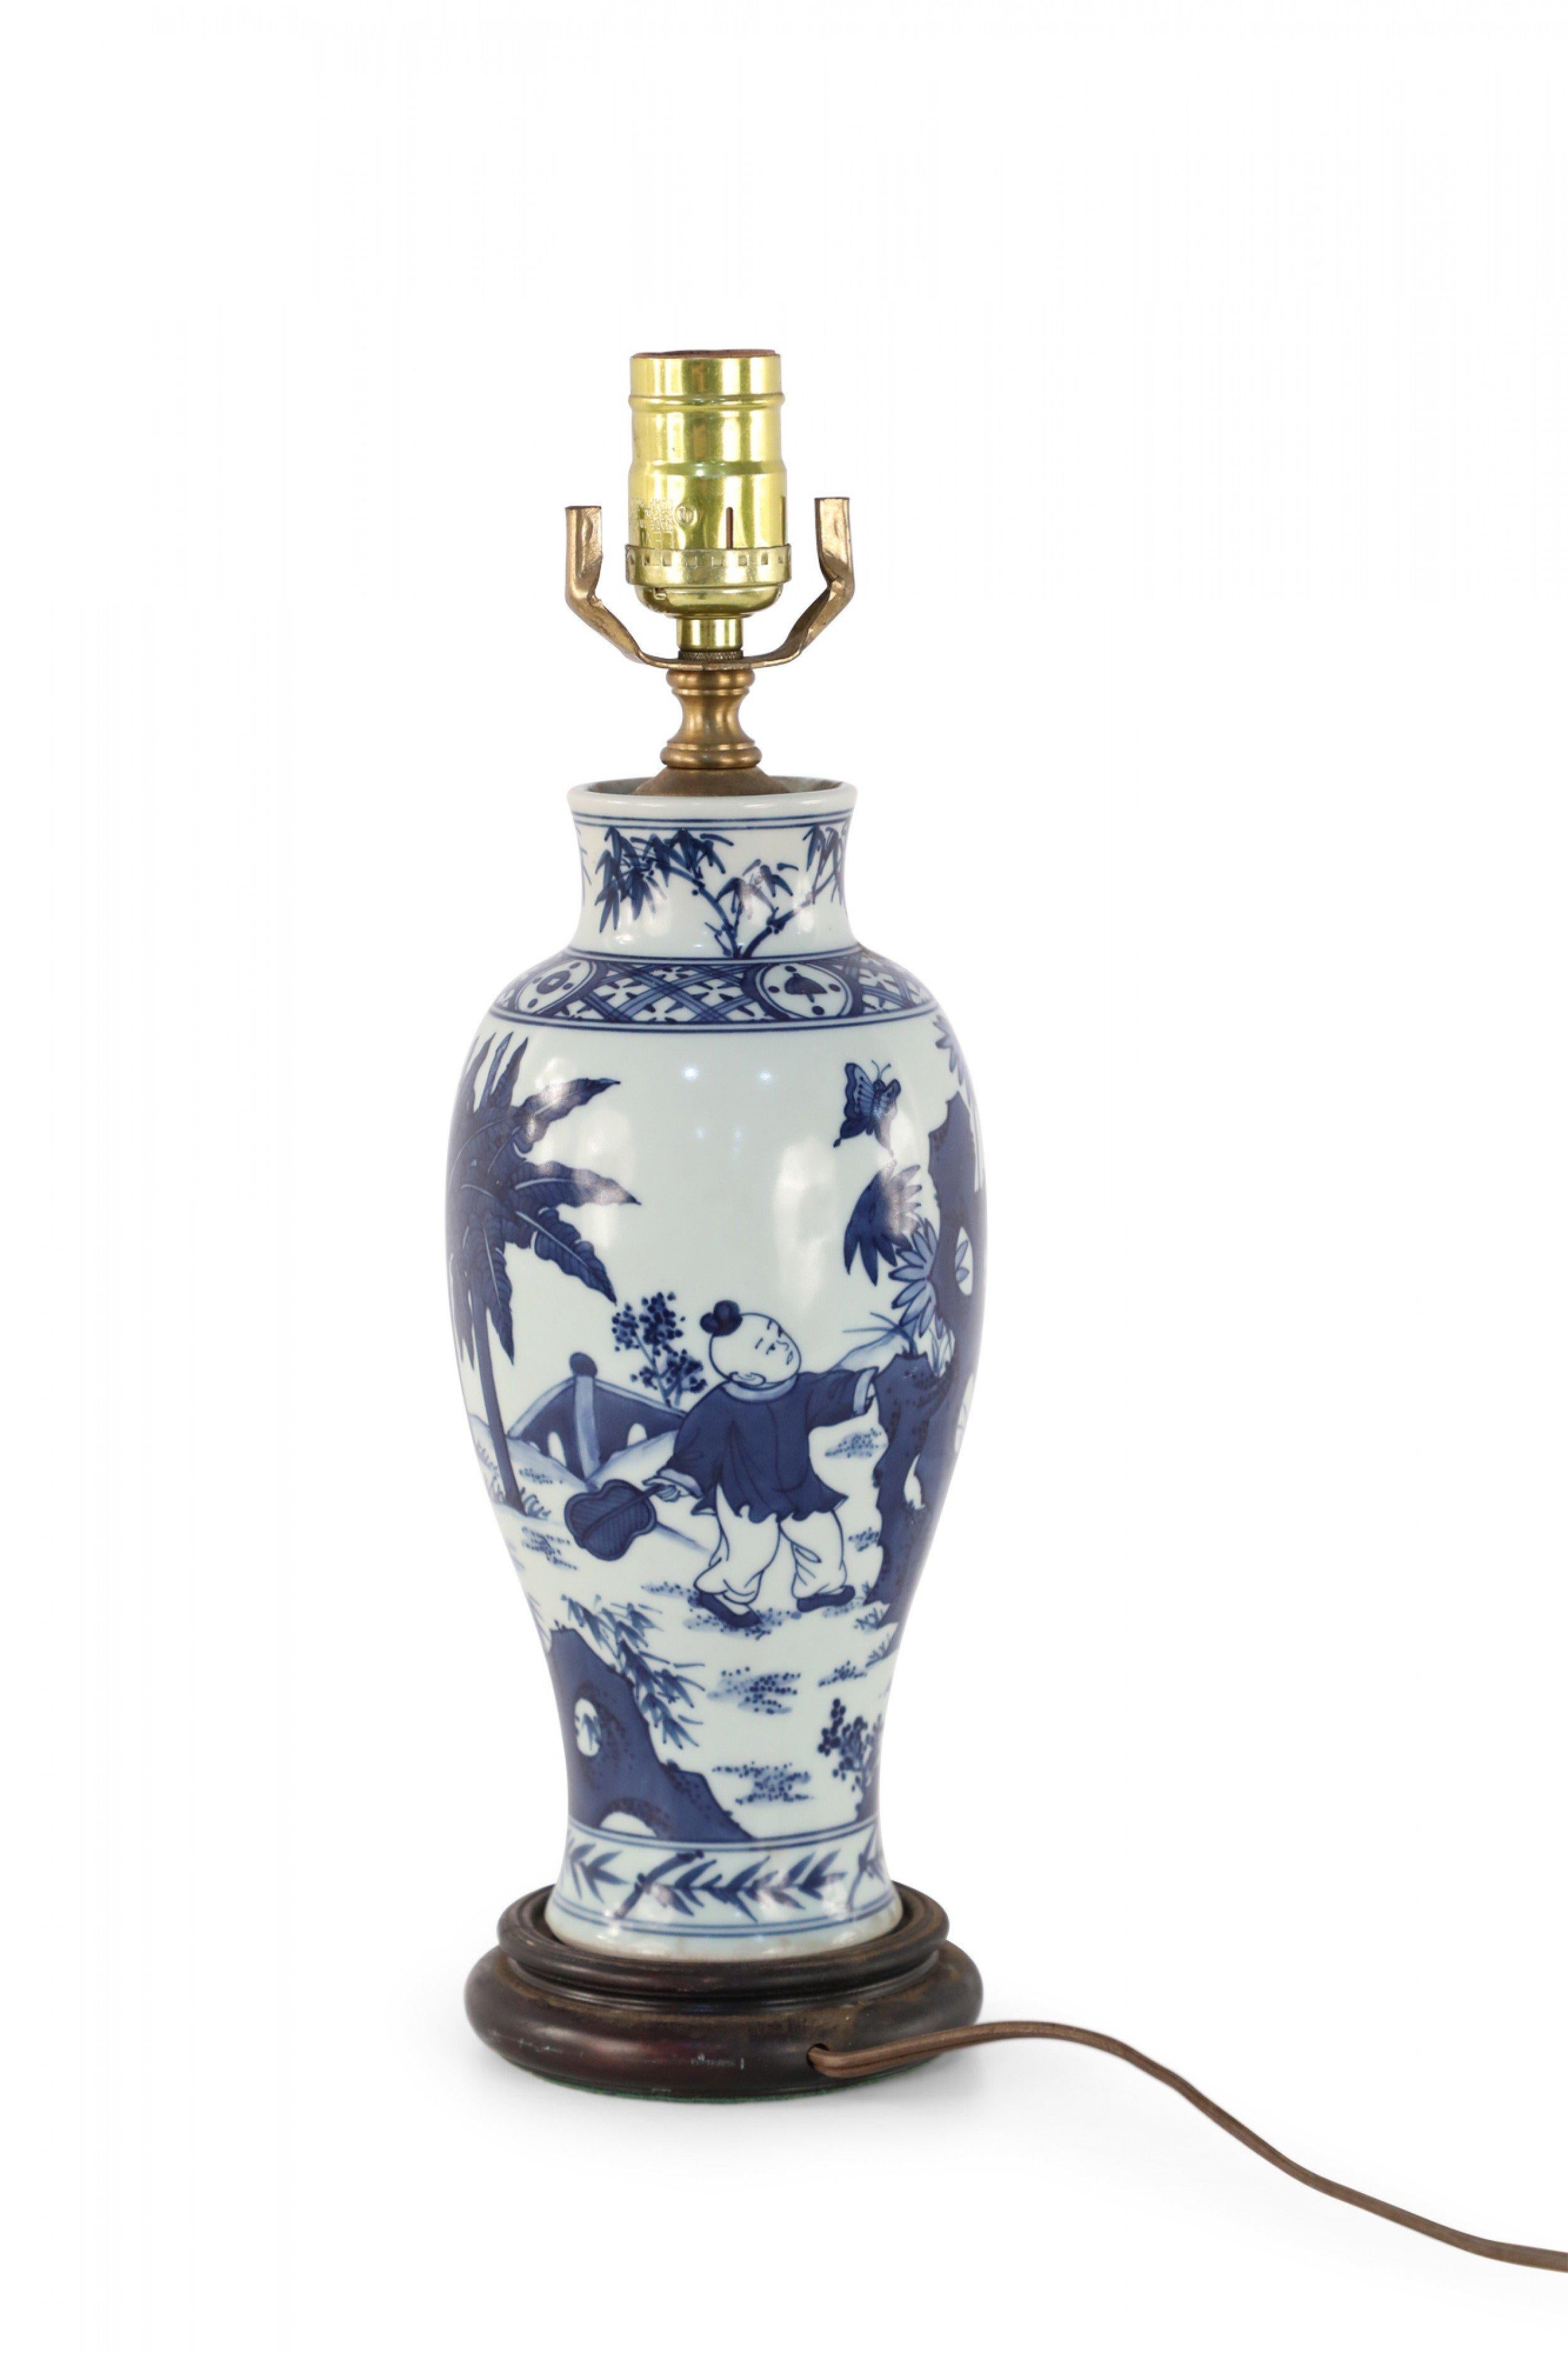 Lampe de table ancienne chinoise (début du 20e siècle) fabriquée à partir d'un vase en porcelaine blanc et bleu en forme de balustre représentant une mère et des enfants jouant à l'extérieur, montée sur une base en bois avec des ferrures en